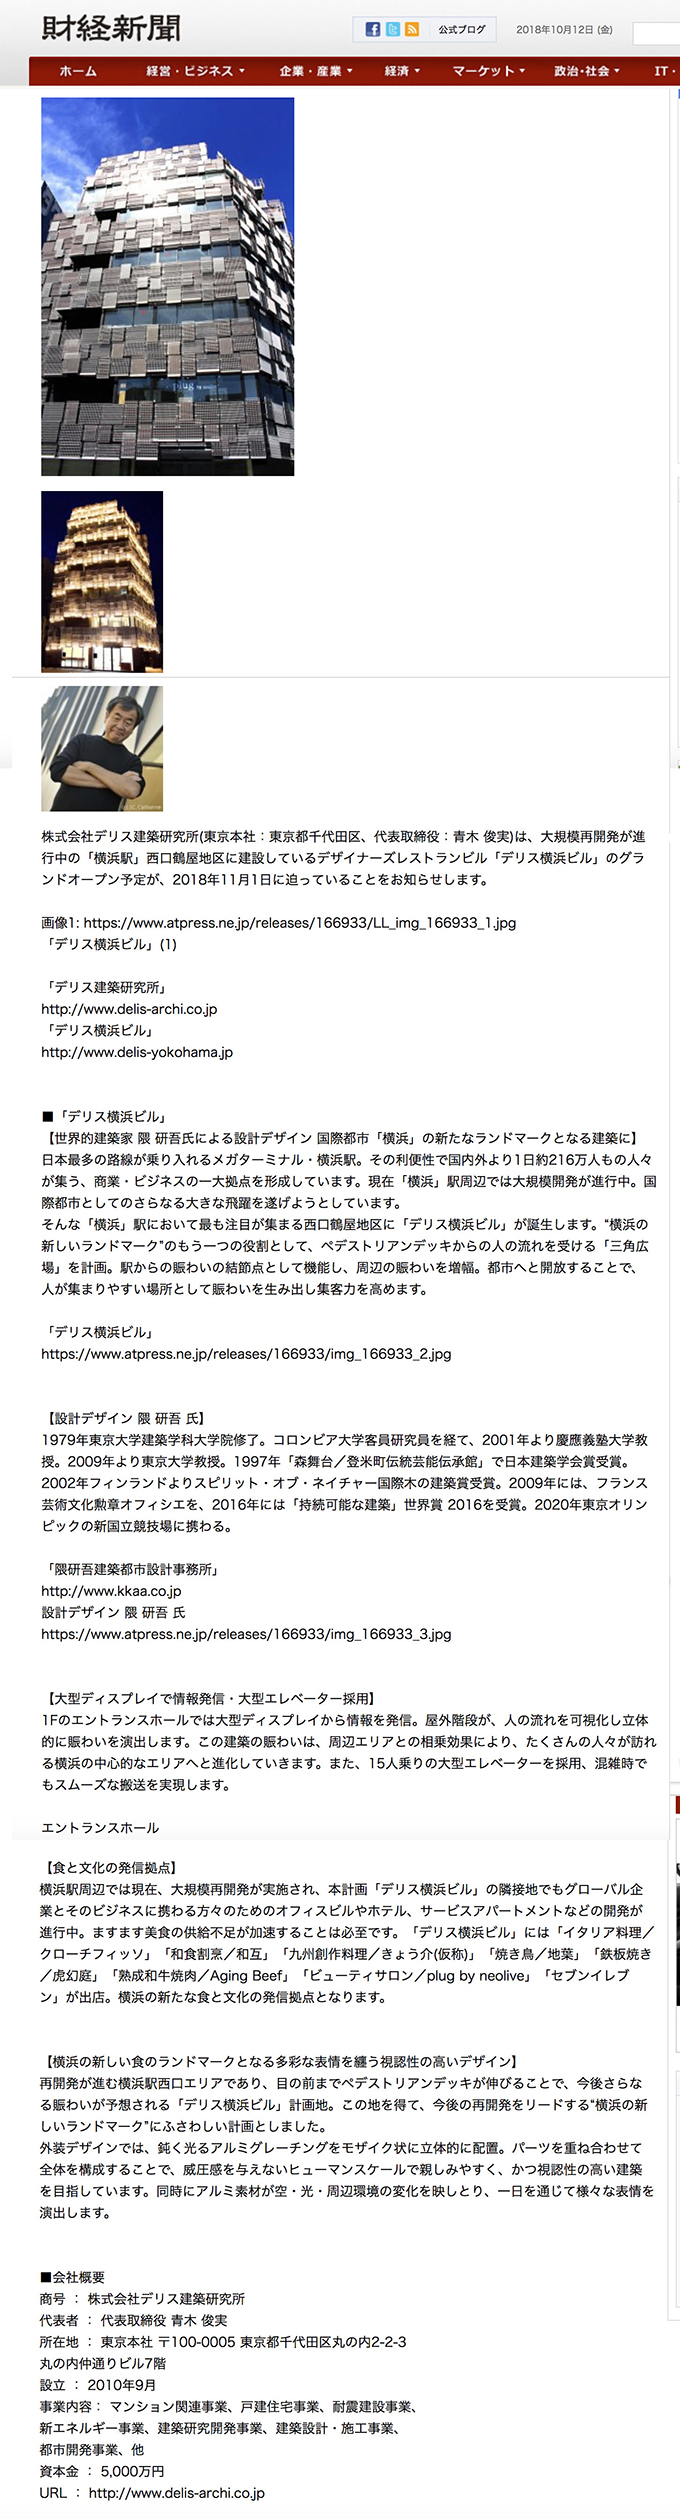 デリス横浜ビルオープン記事が財経新聞に掲載されました。